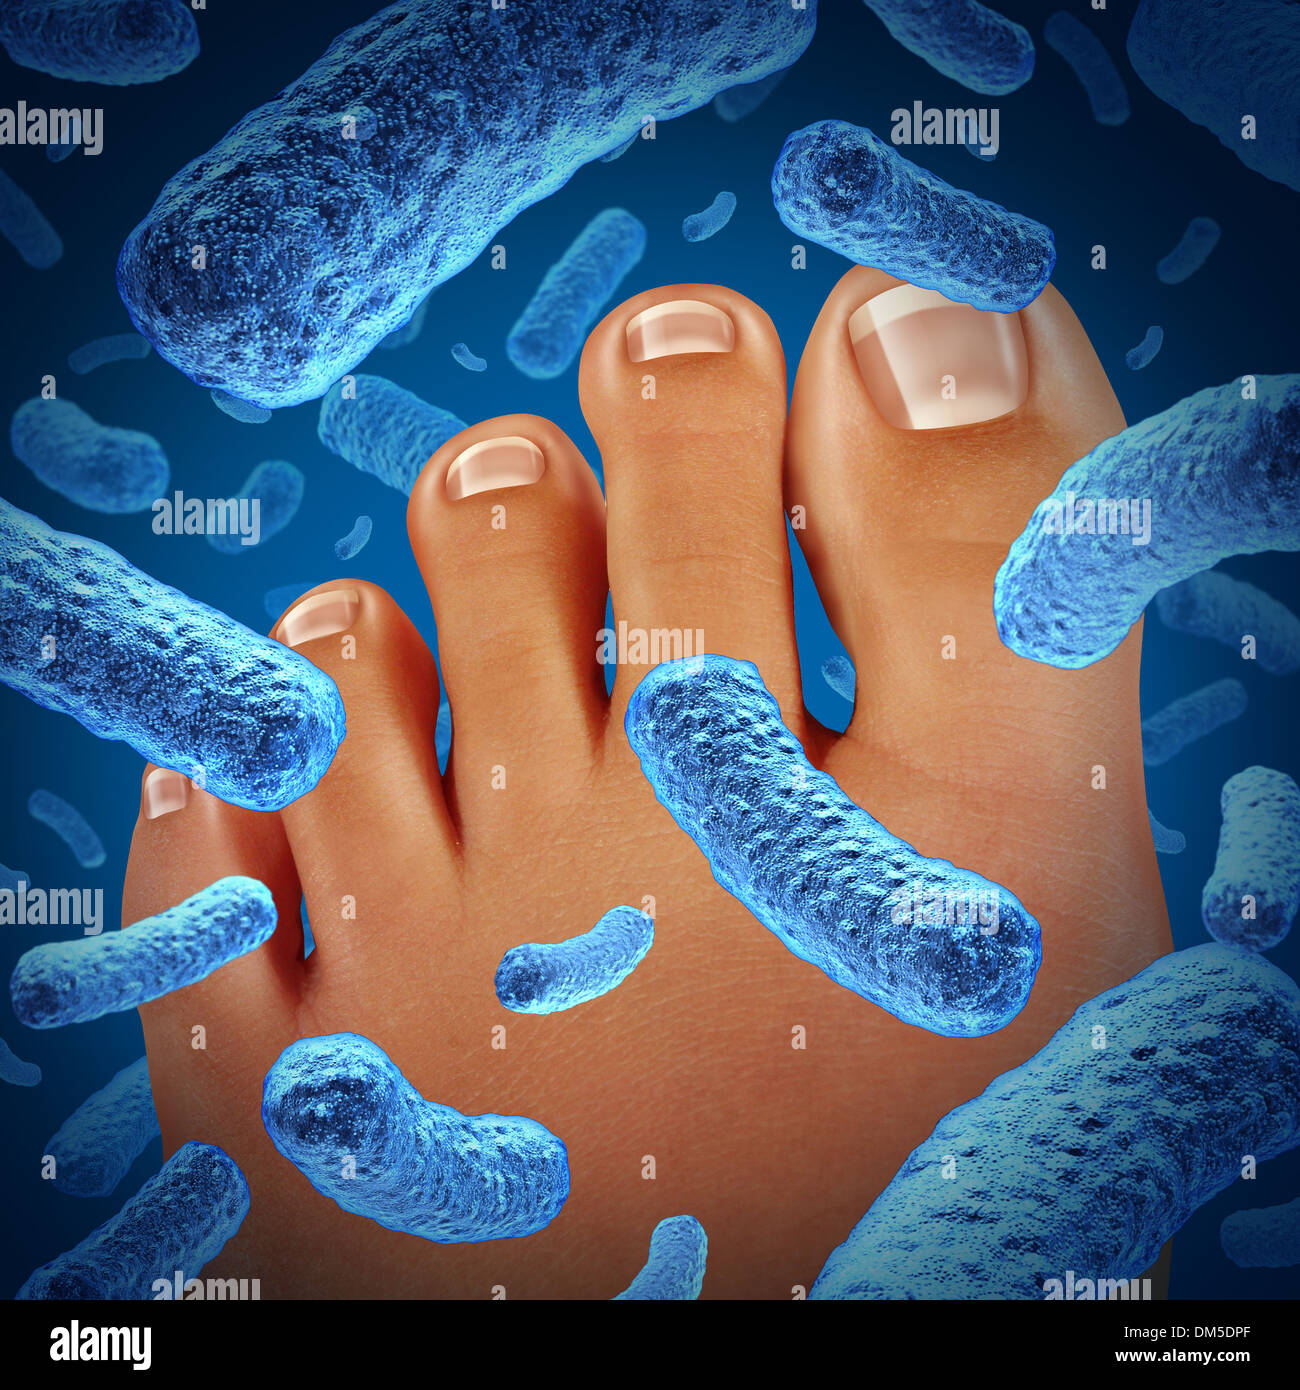 Fuß Bakterien krankmachenden einen stinkenden Geruch mit einer engen des menschlichen Körpers zeigt Zehen mit blauen bakterielle Infektion-Gefahr Stockfoto